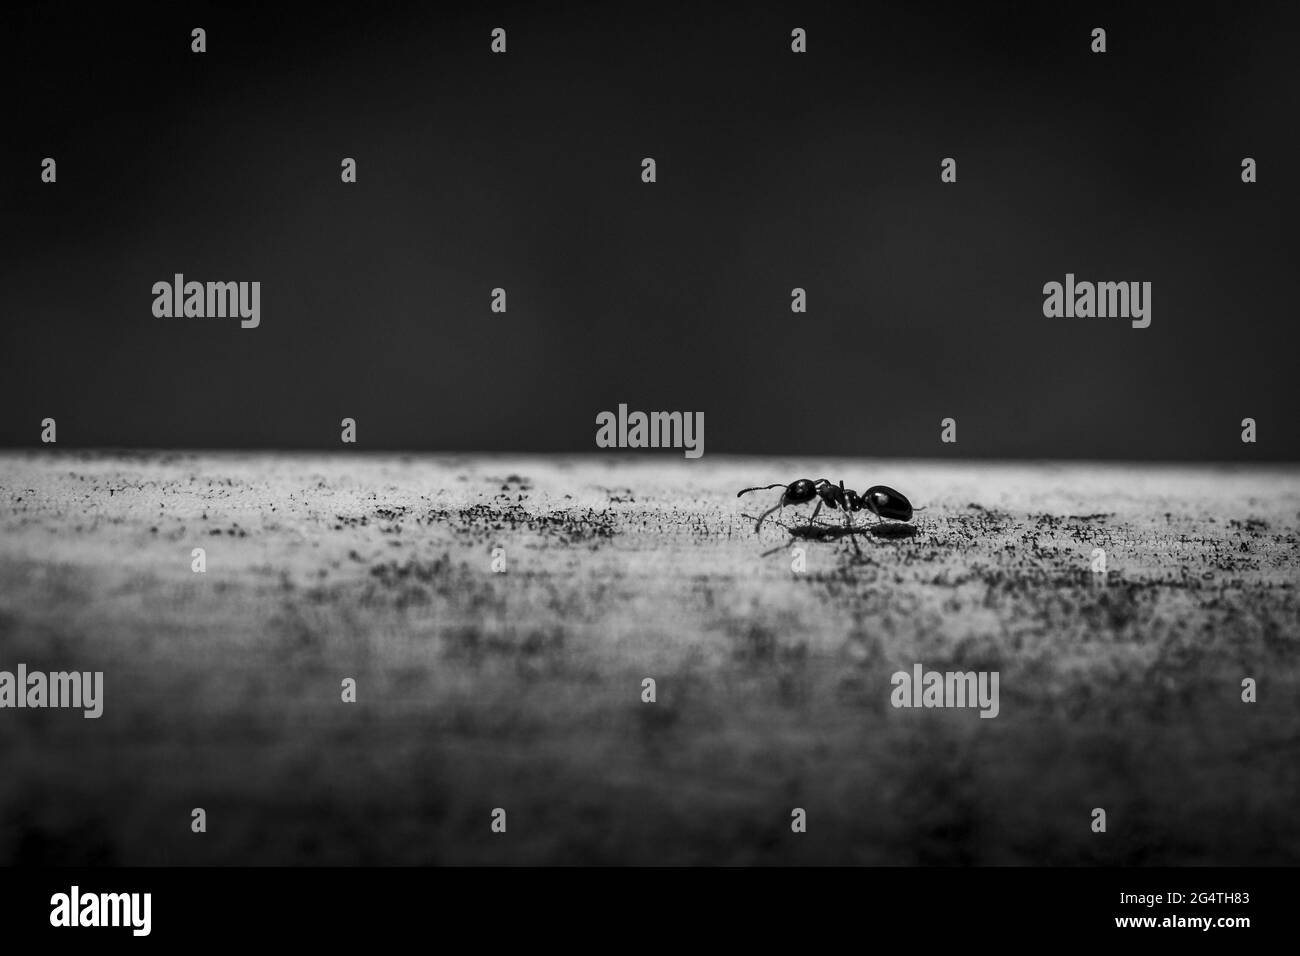 Prise de vue en niveaux de gris d'une fourmi sur une surface plane et lisse Banque D'Images